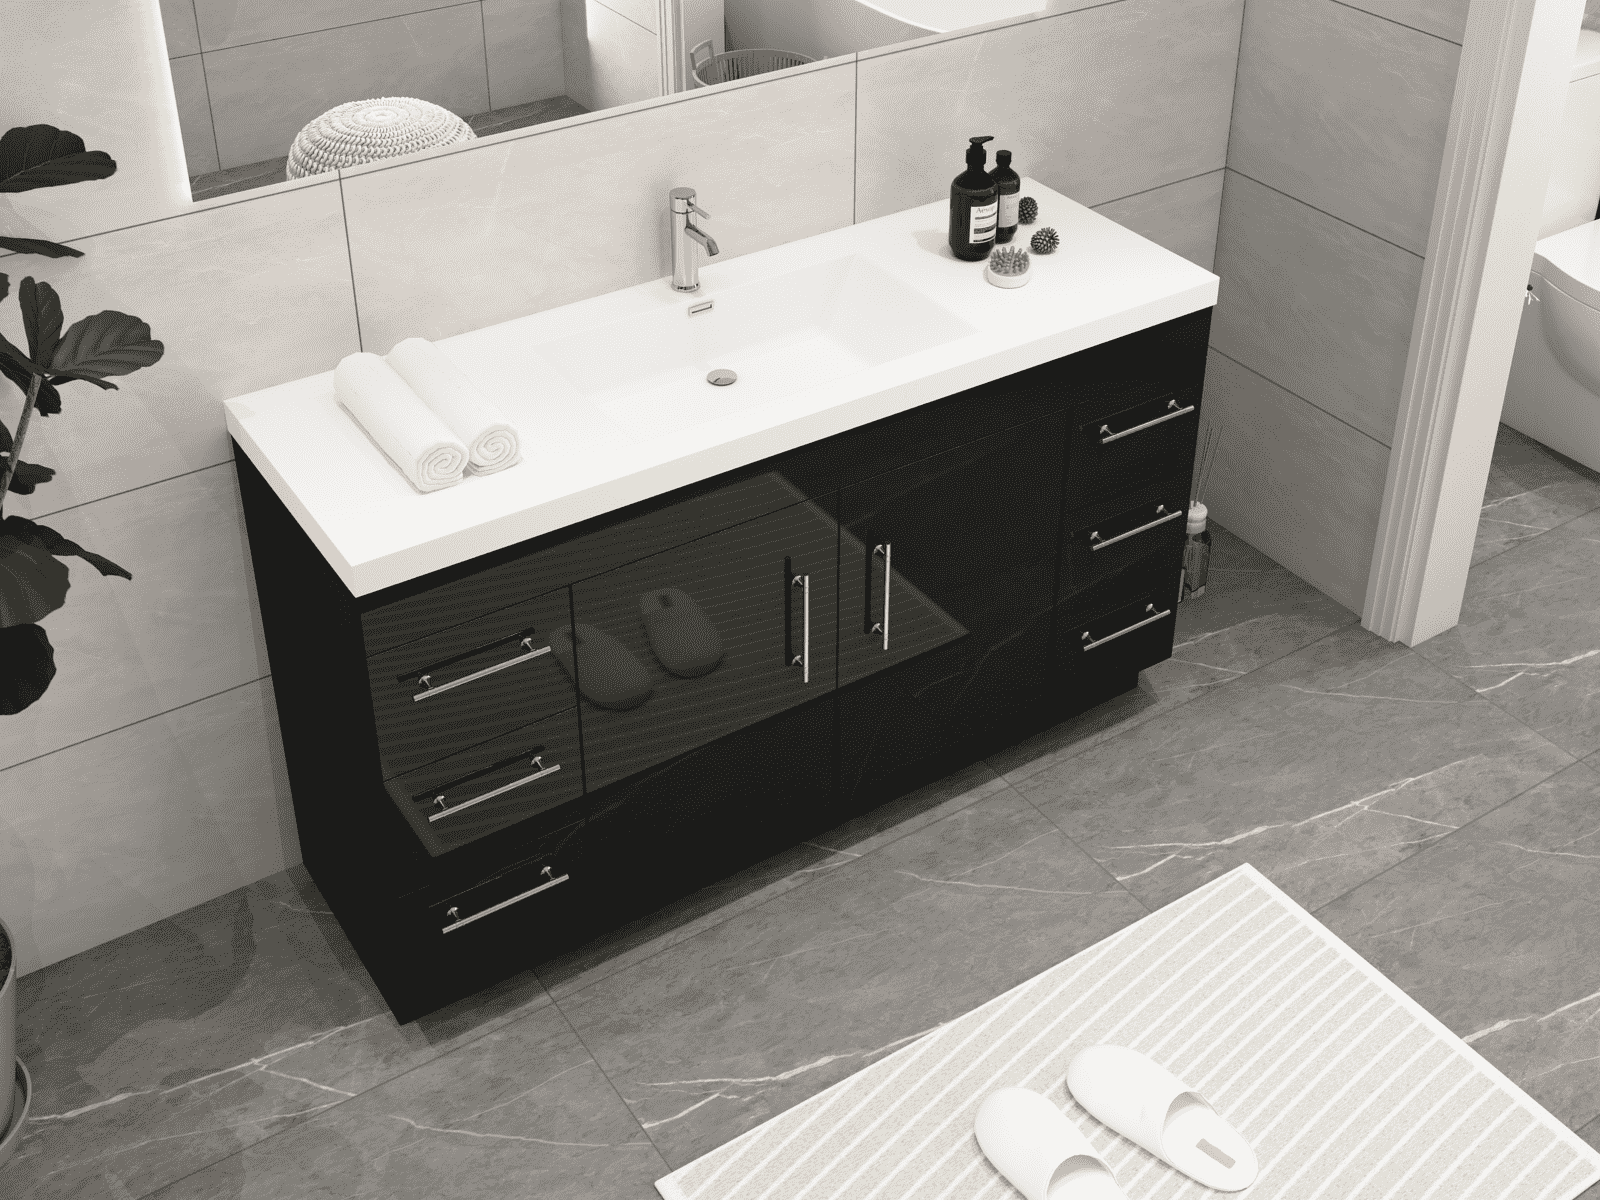 Elsa 60" Freestanding Bathroom Vanity with Reinforced Acrylic Sink in Gloss Black | Better Vanity